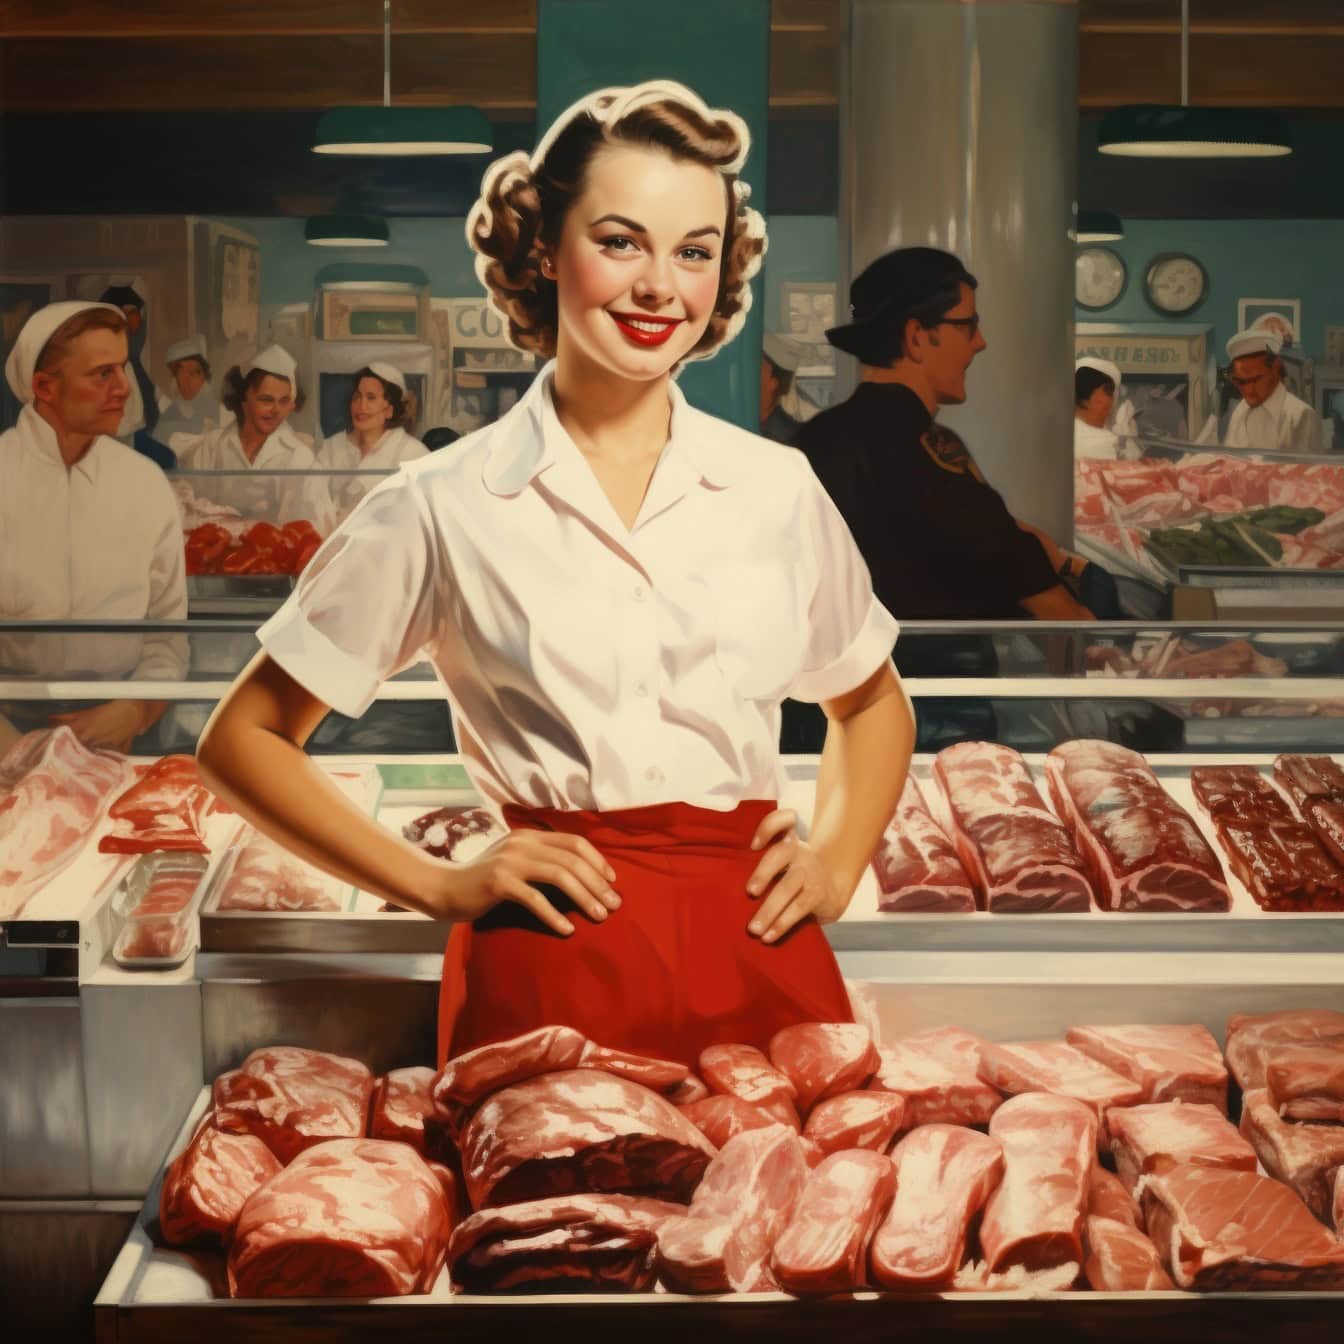 Bir kasap dükkanında veya süpermarkette etin önünde duran bir kasap kadın, 1960’ların tarzında bir illüstrasyon